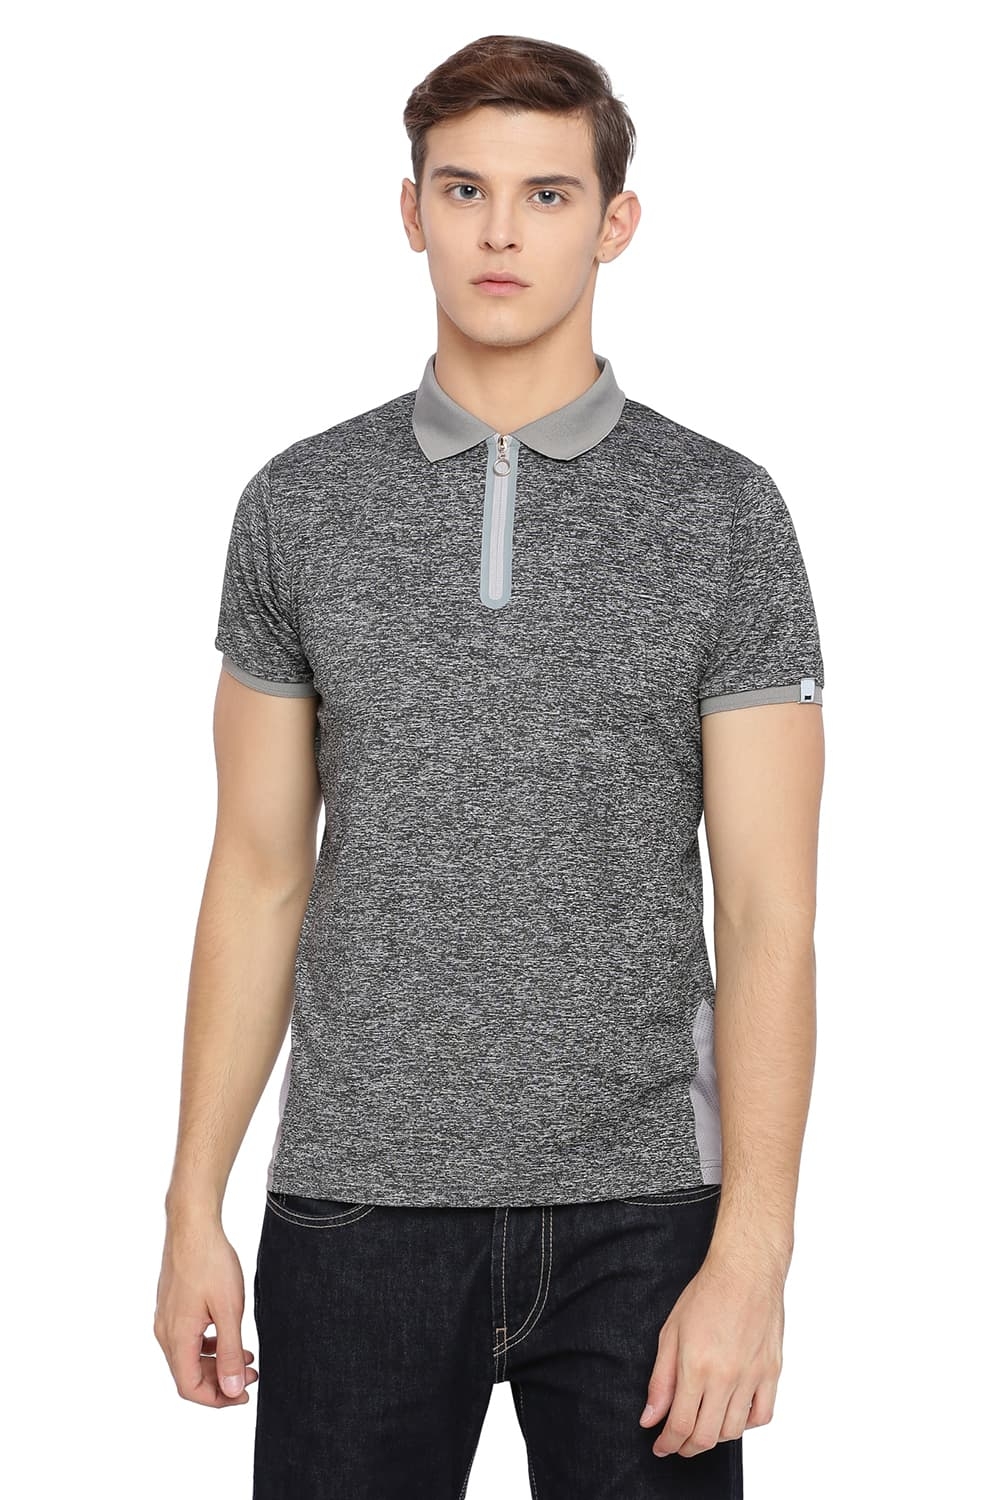 Basics | Basics Muscle Fit Gargoyle Grey Polo T Shirt